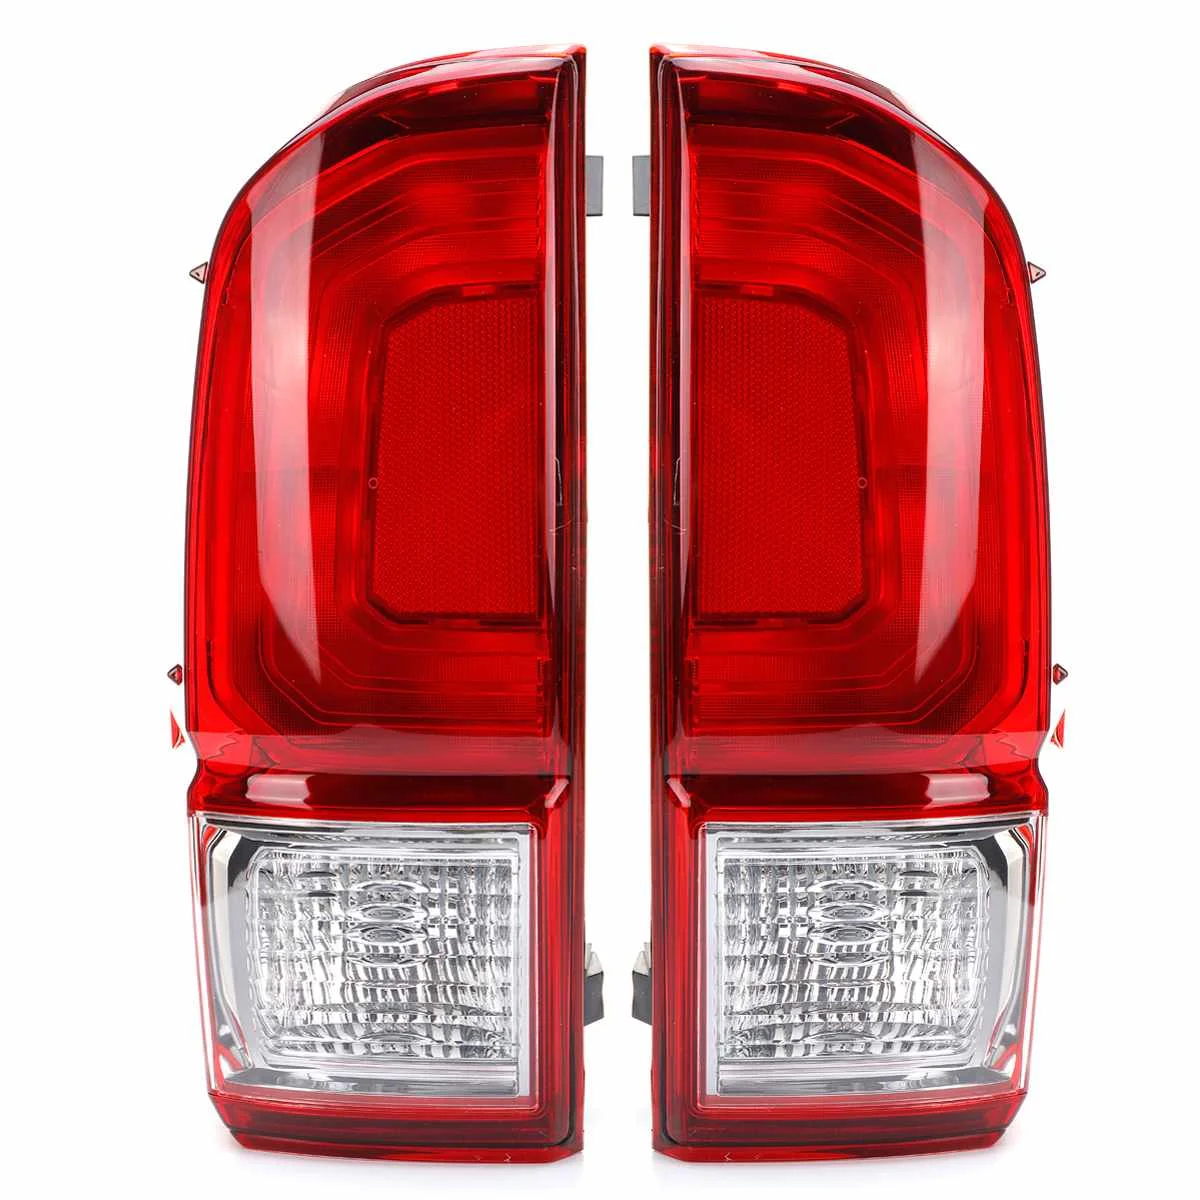 1 шт. 12 в задний фонарь Тормозная лампа красная задняя фара лампа для Марка Toyota Tacoma пикап L 81560-04190, R 81550-04190